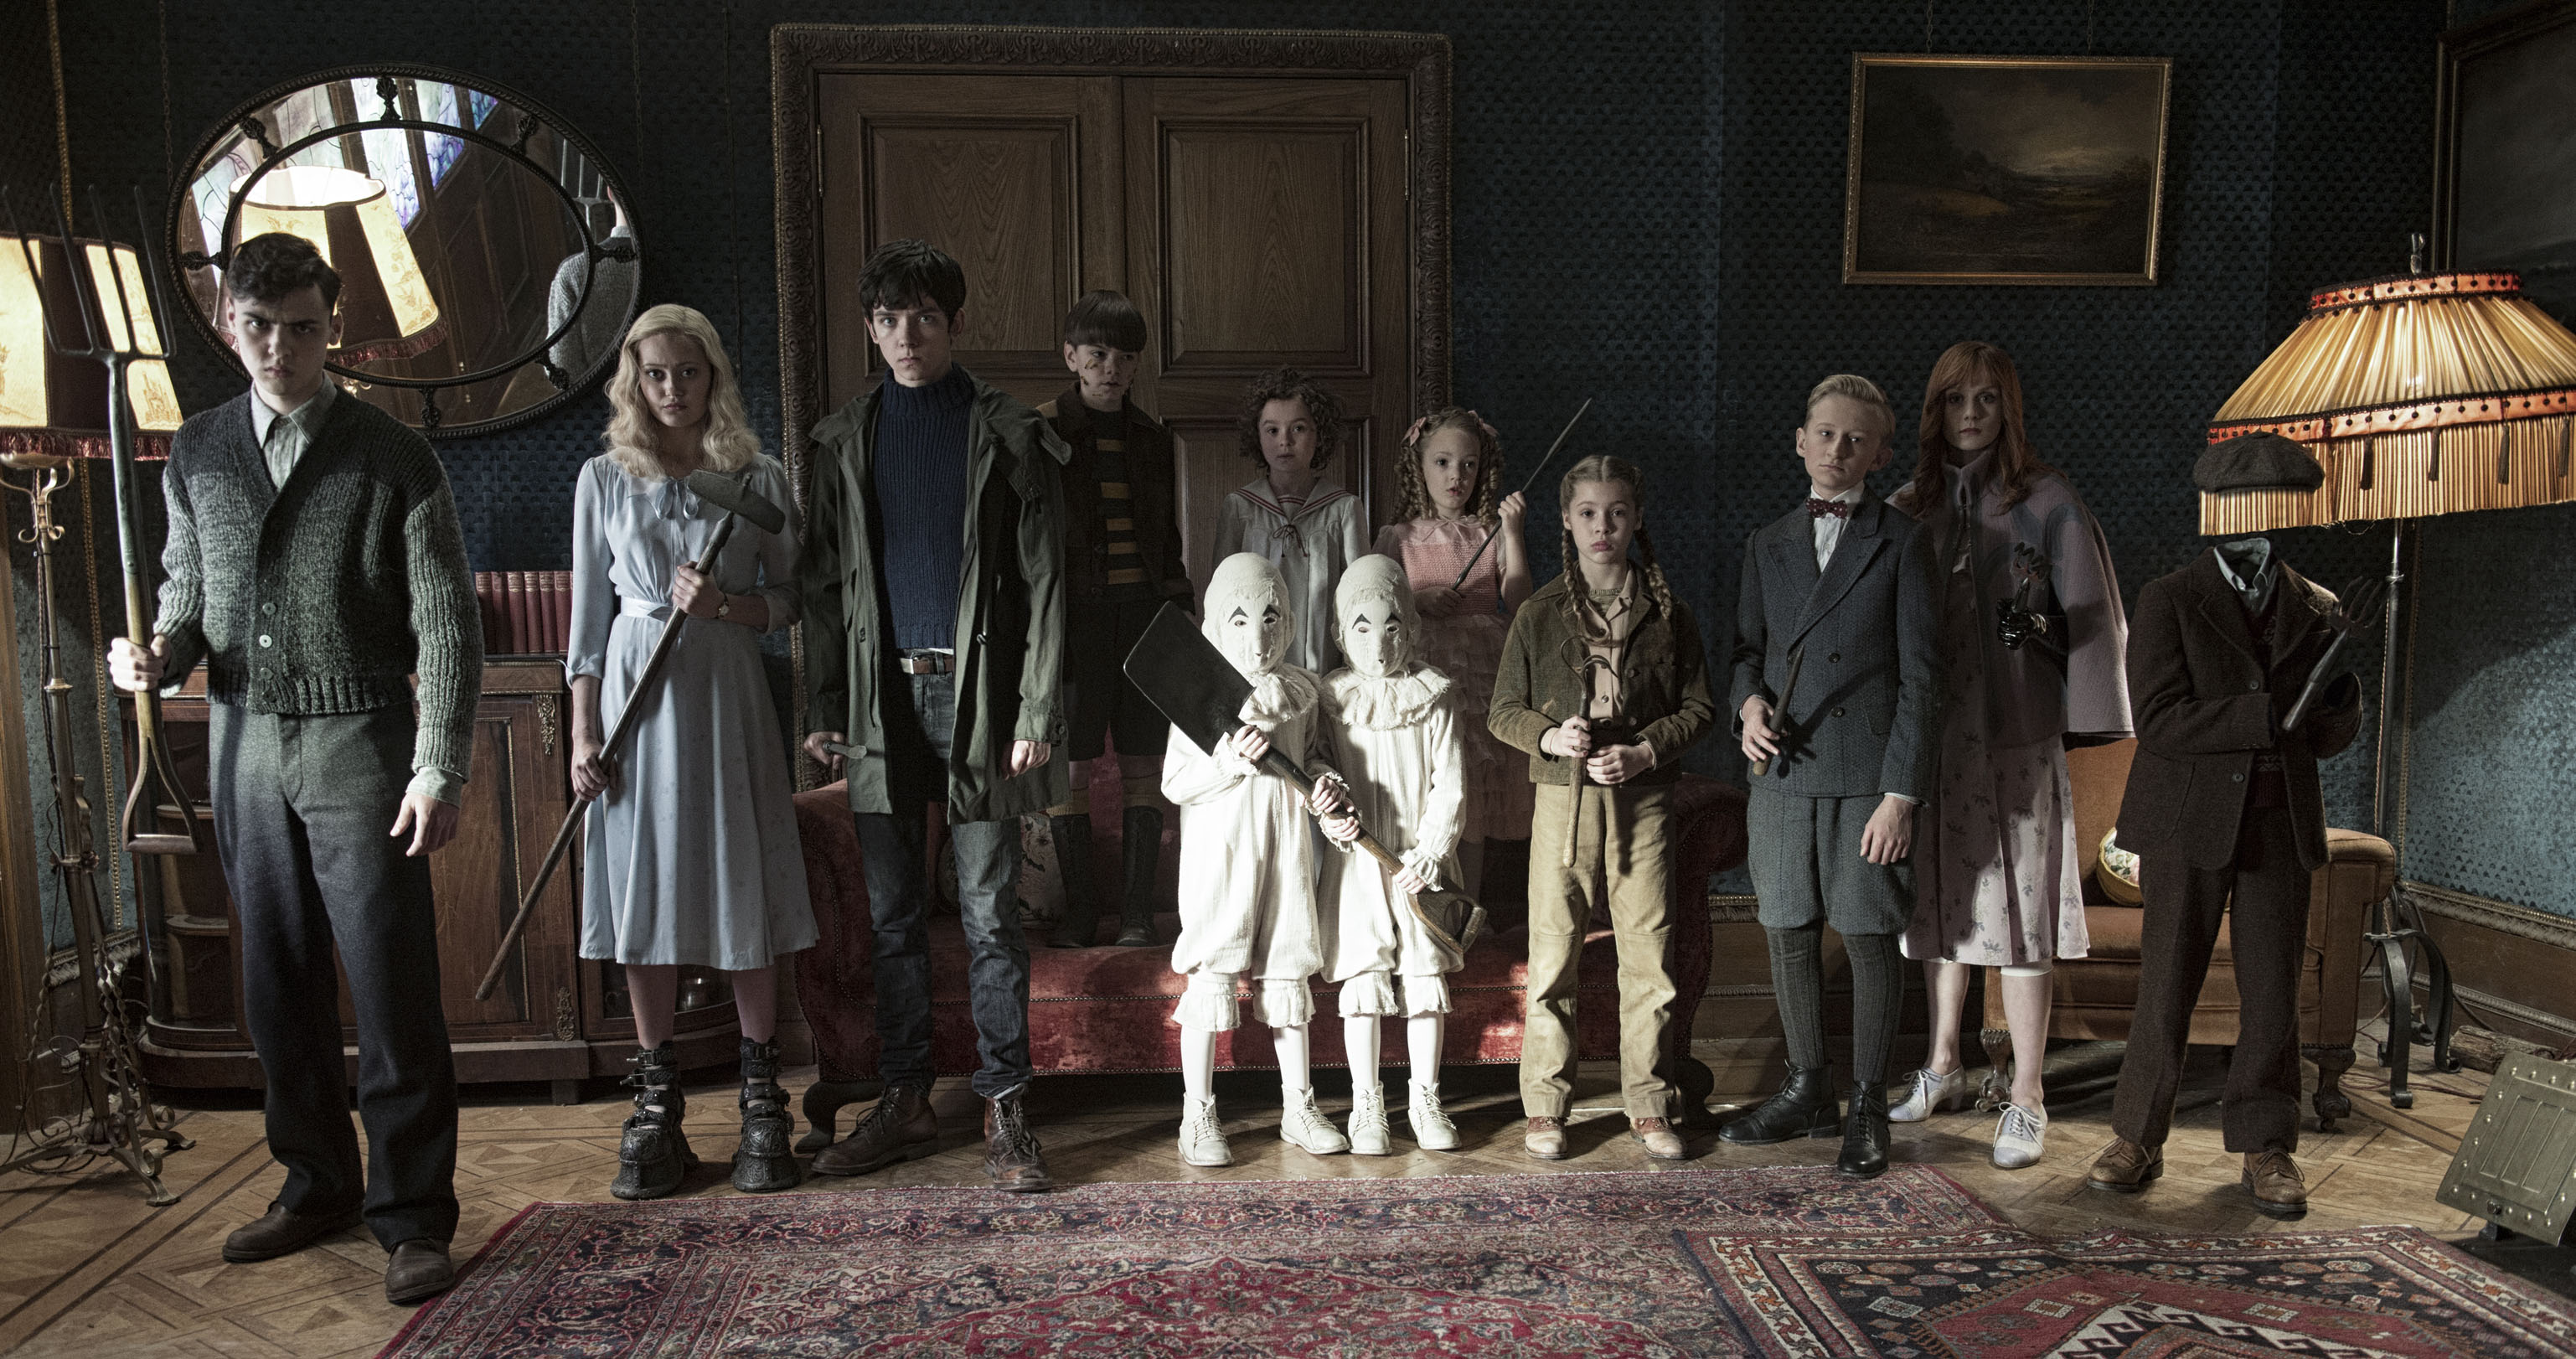 Bekijk Tim Burton-film Miss Peregrine’s Home for Peculiar Children trailer